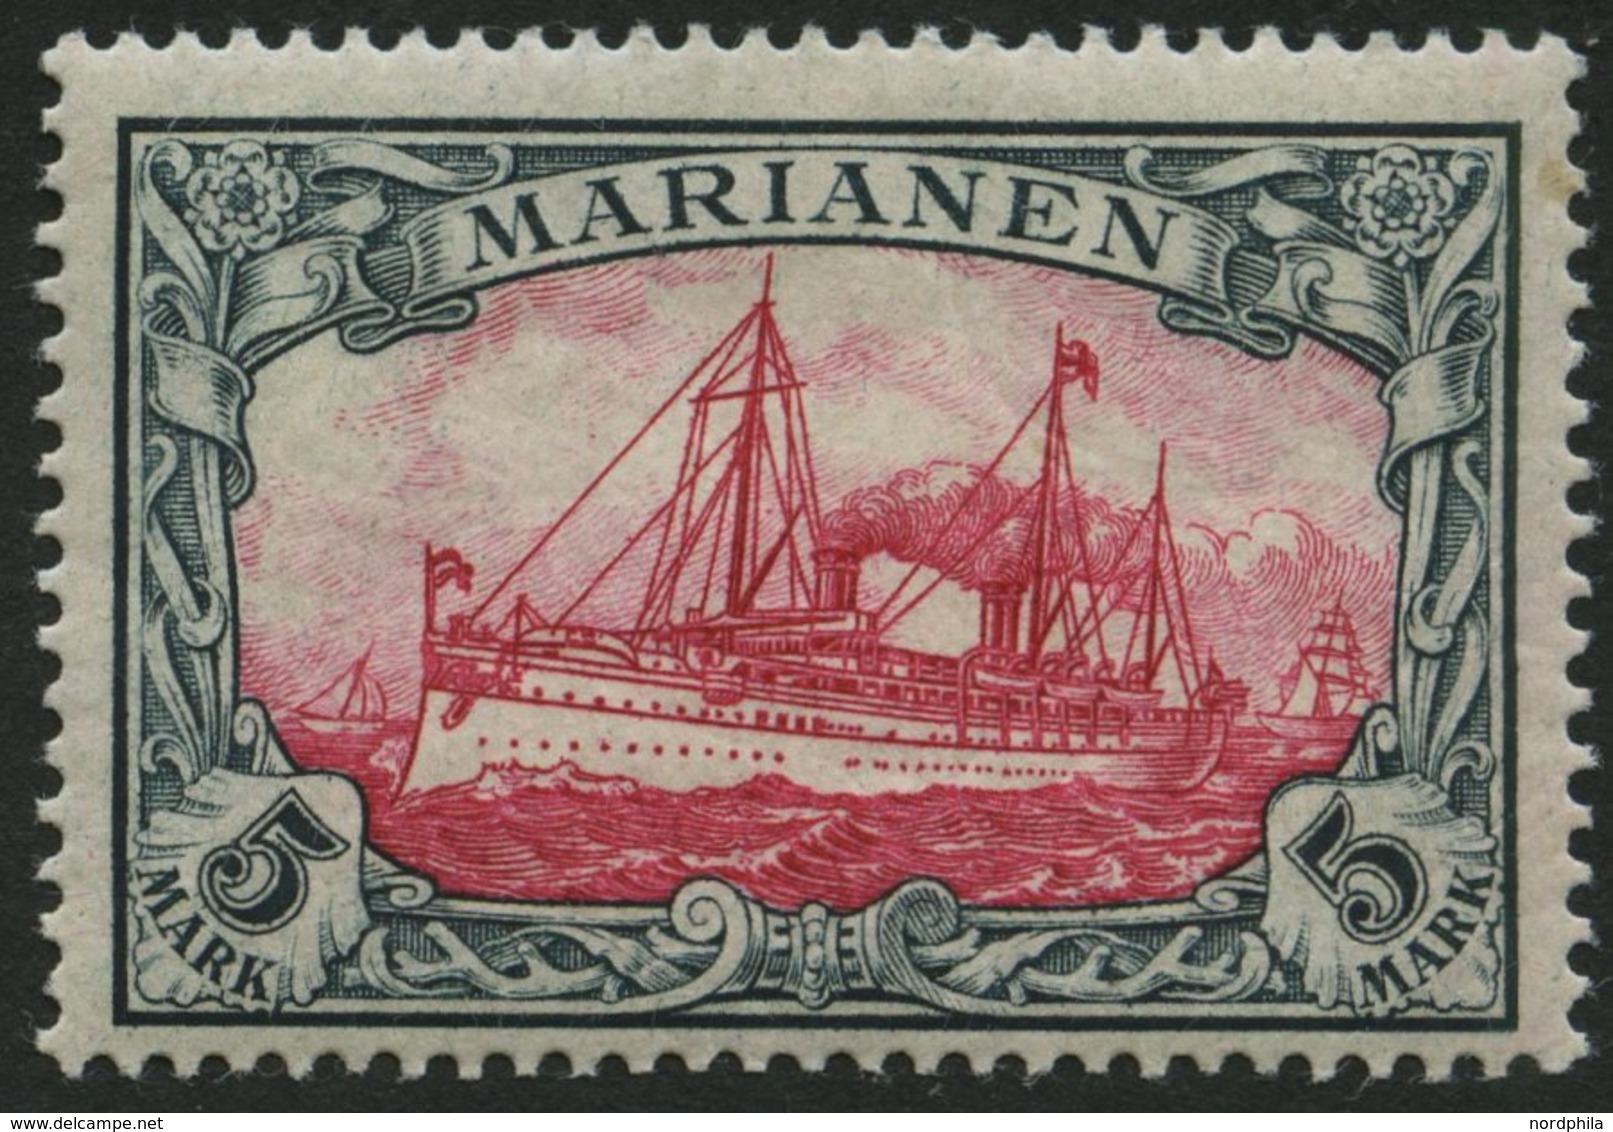 MARIANEN 19 *, 1901, 5 M. Grünschwarz/dunkelkarmin, Ohne Wz., Falzrest, Pracht, Signiert, Mi. 170.- - Isole Marianne